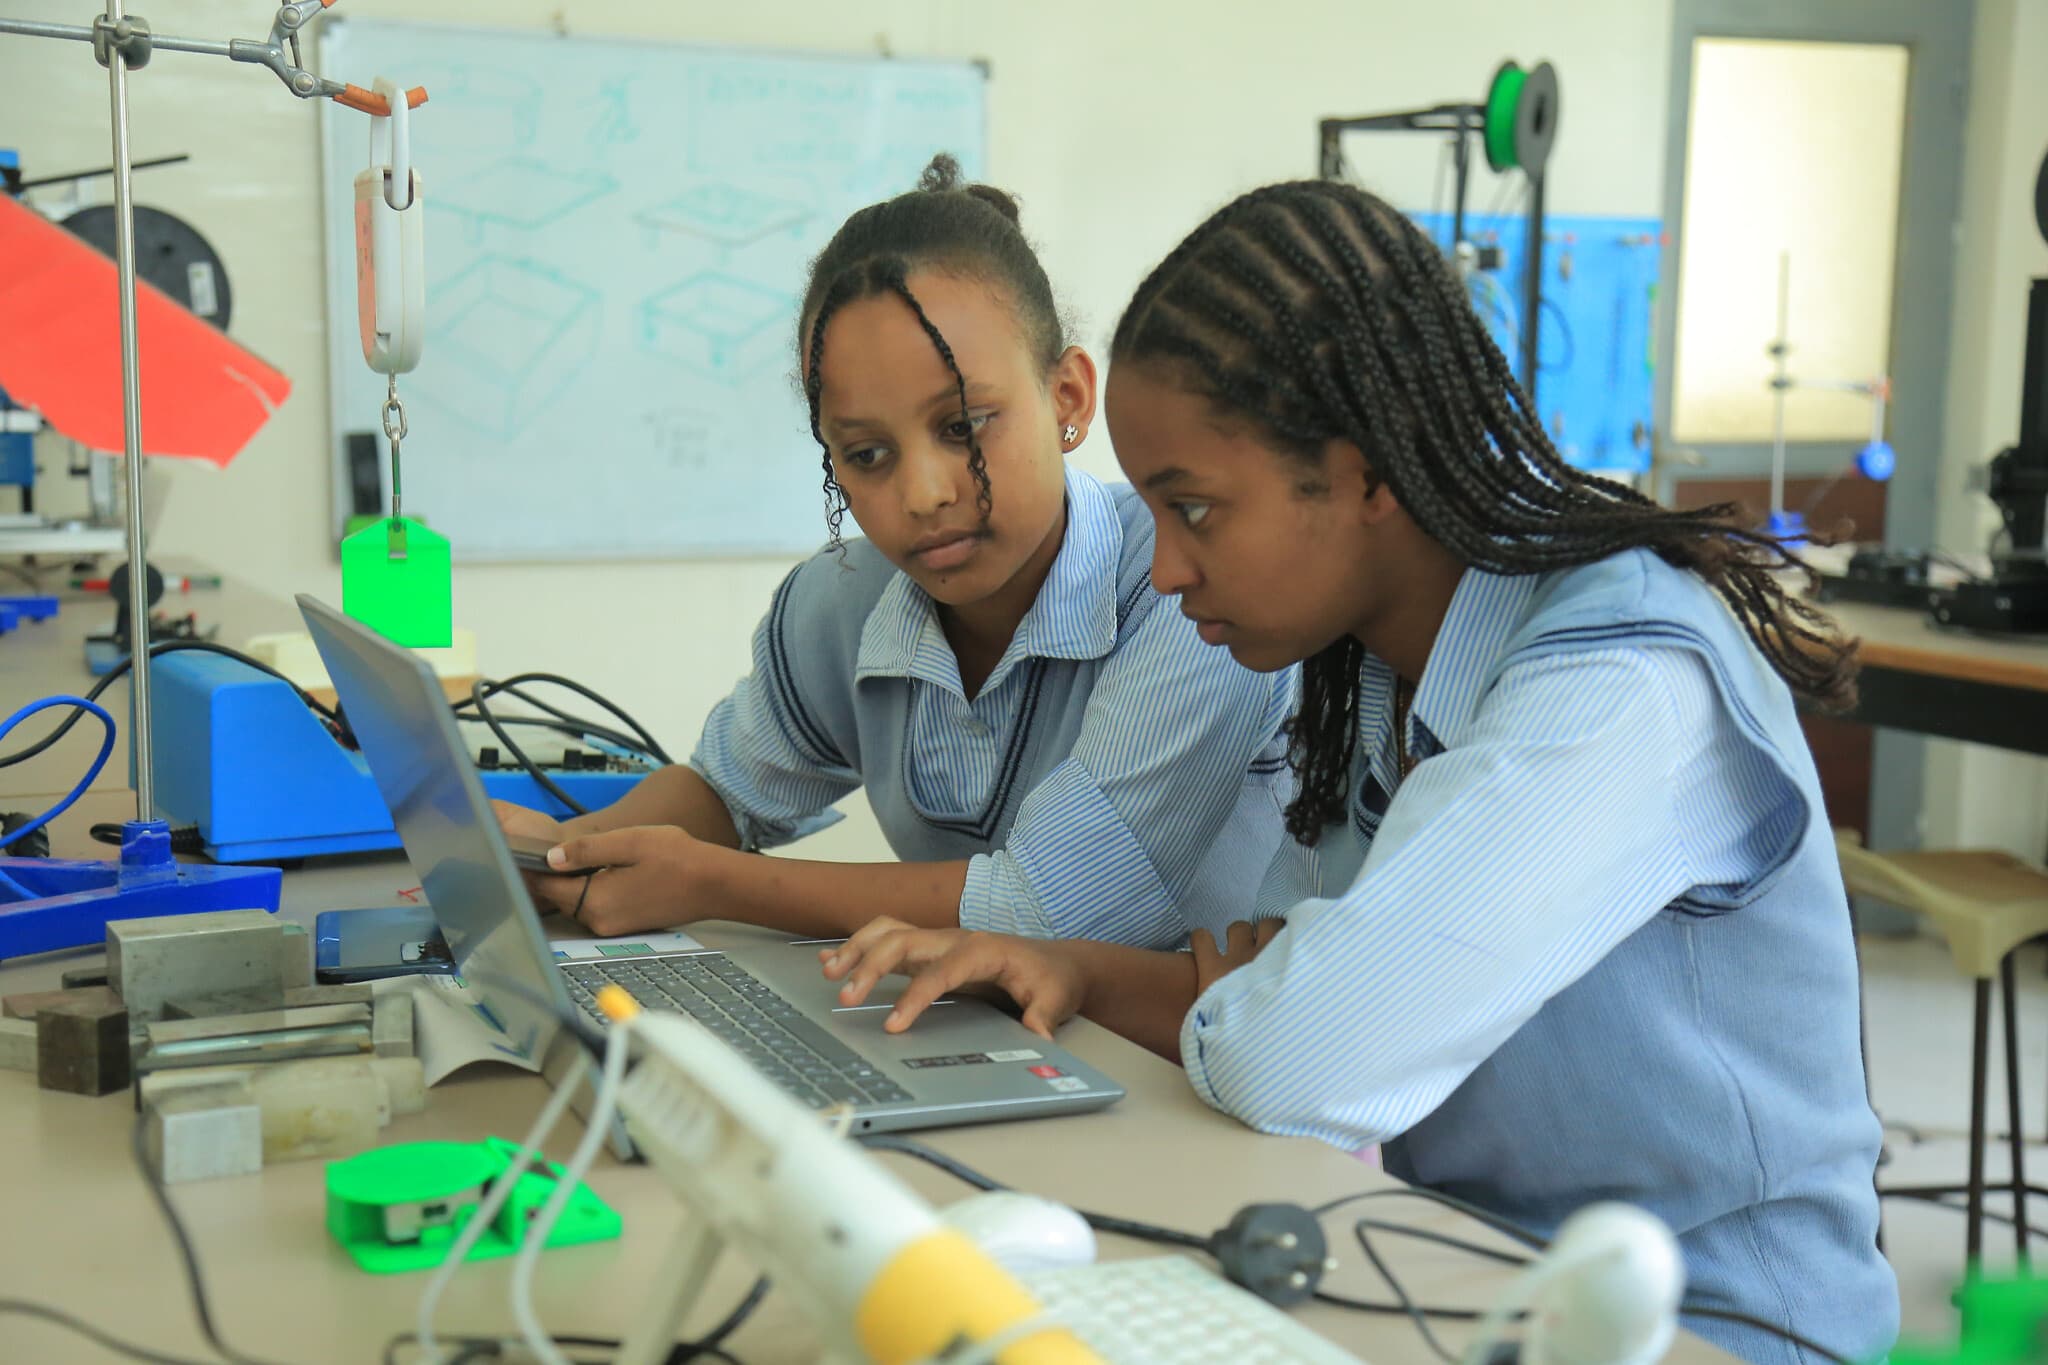 פנט גוסה וקלקידאן אשטיו עובדות על פרויקט EZ Registration במרכז STEMpower בפוקה שבבישופטו, אתיופיה, יולי 2023 (צילום: באדיבות STEMpower)